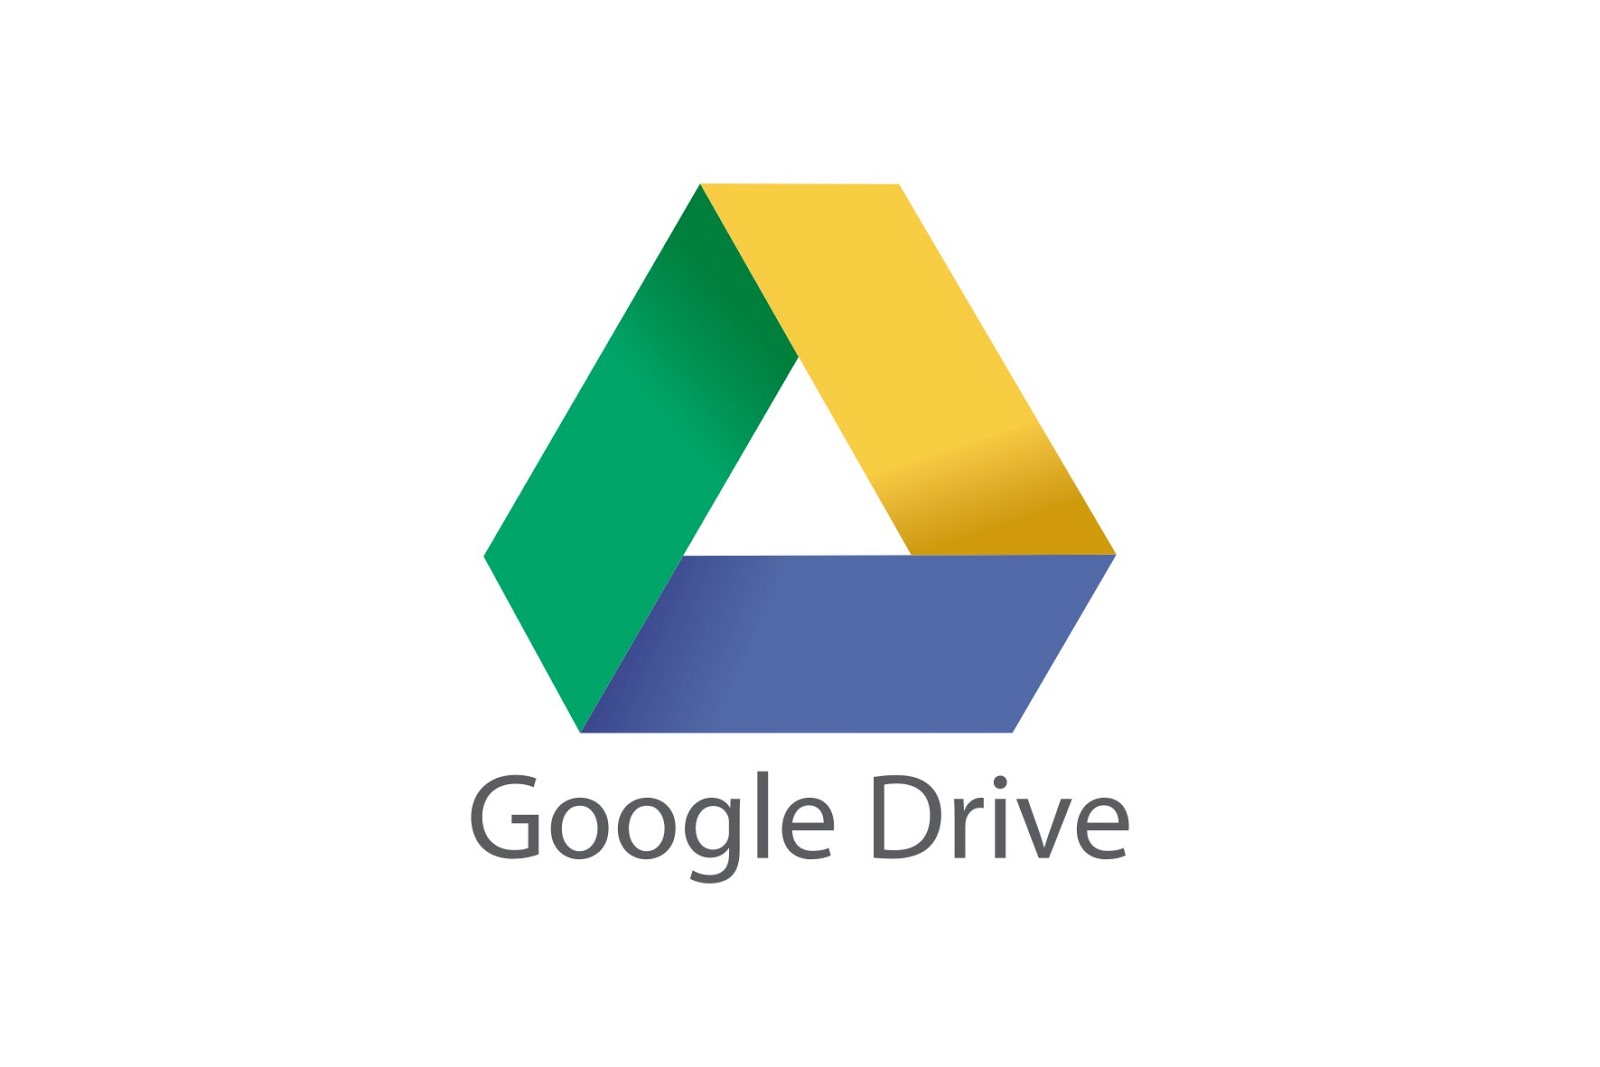 Google Drive แจกพื้นที่ฟรี 2GB เพียงเช็กความปลอดภัยบัญชีภายใน 17 ก.พ. 58